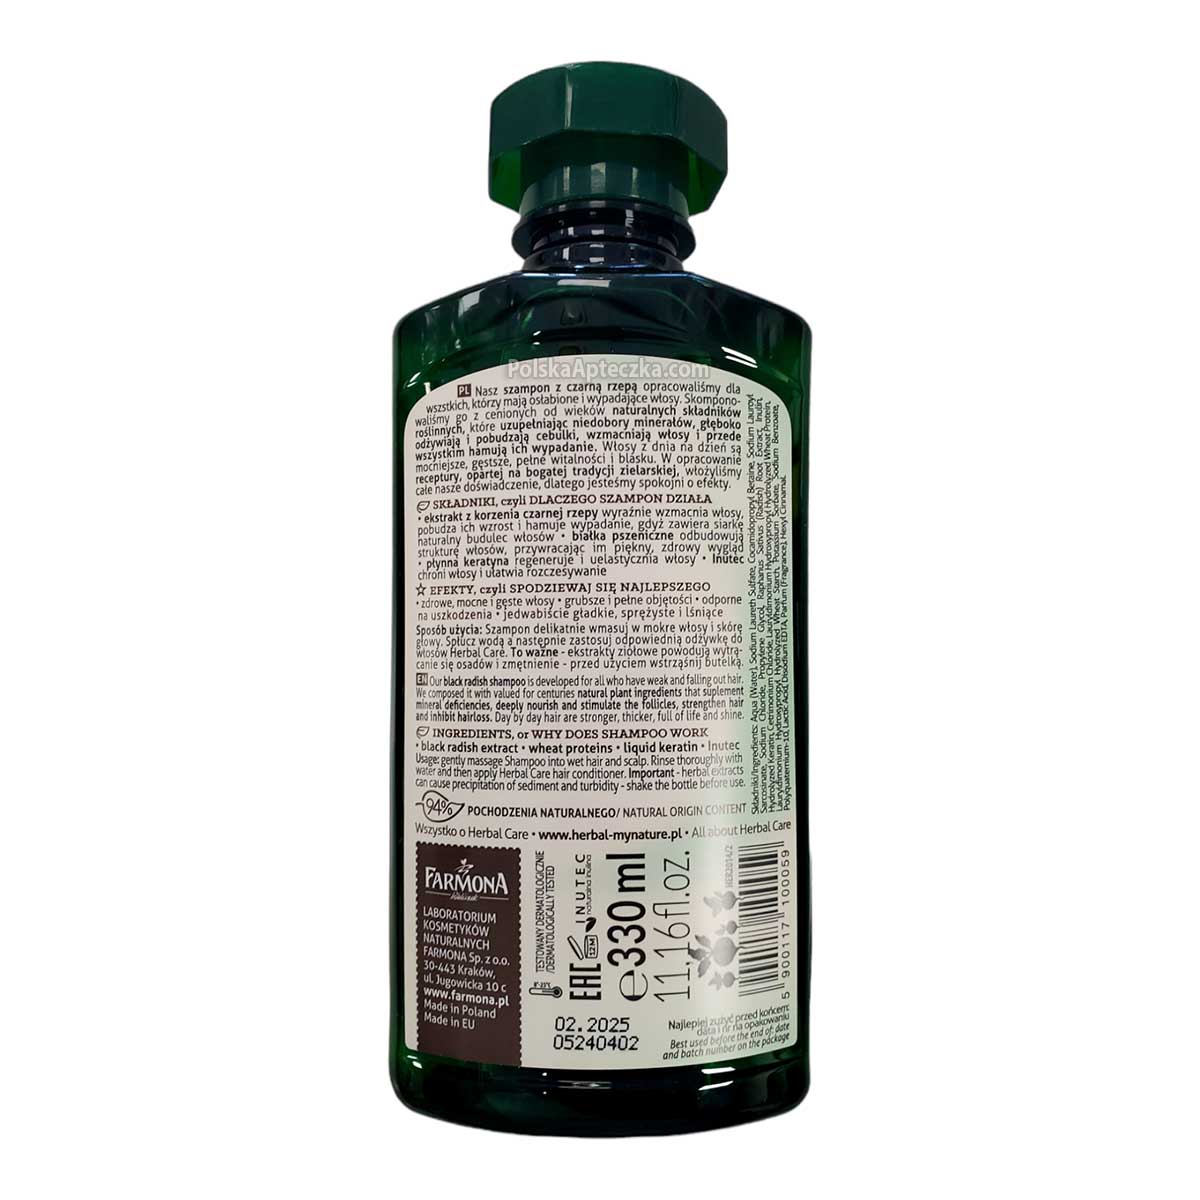 herbal care czarna rzepa szampon do włosów 330 ml